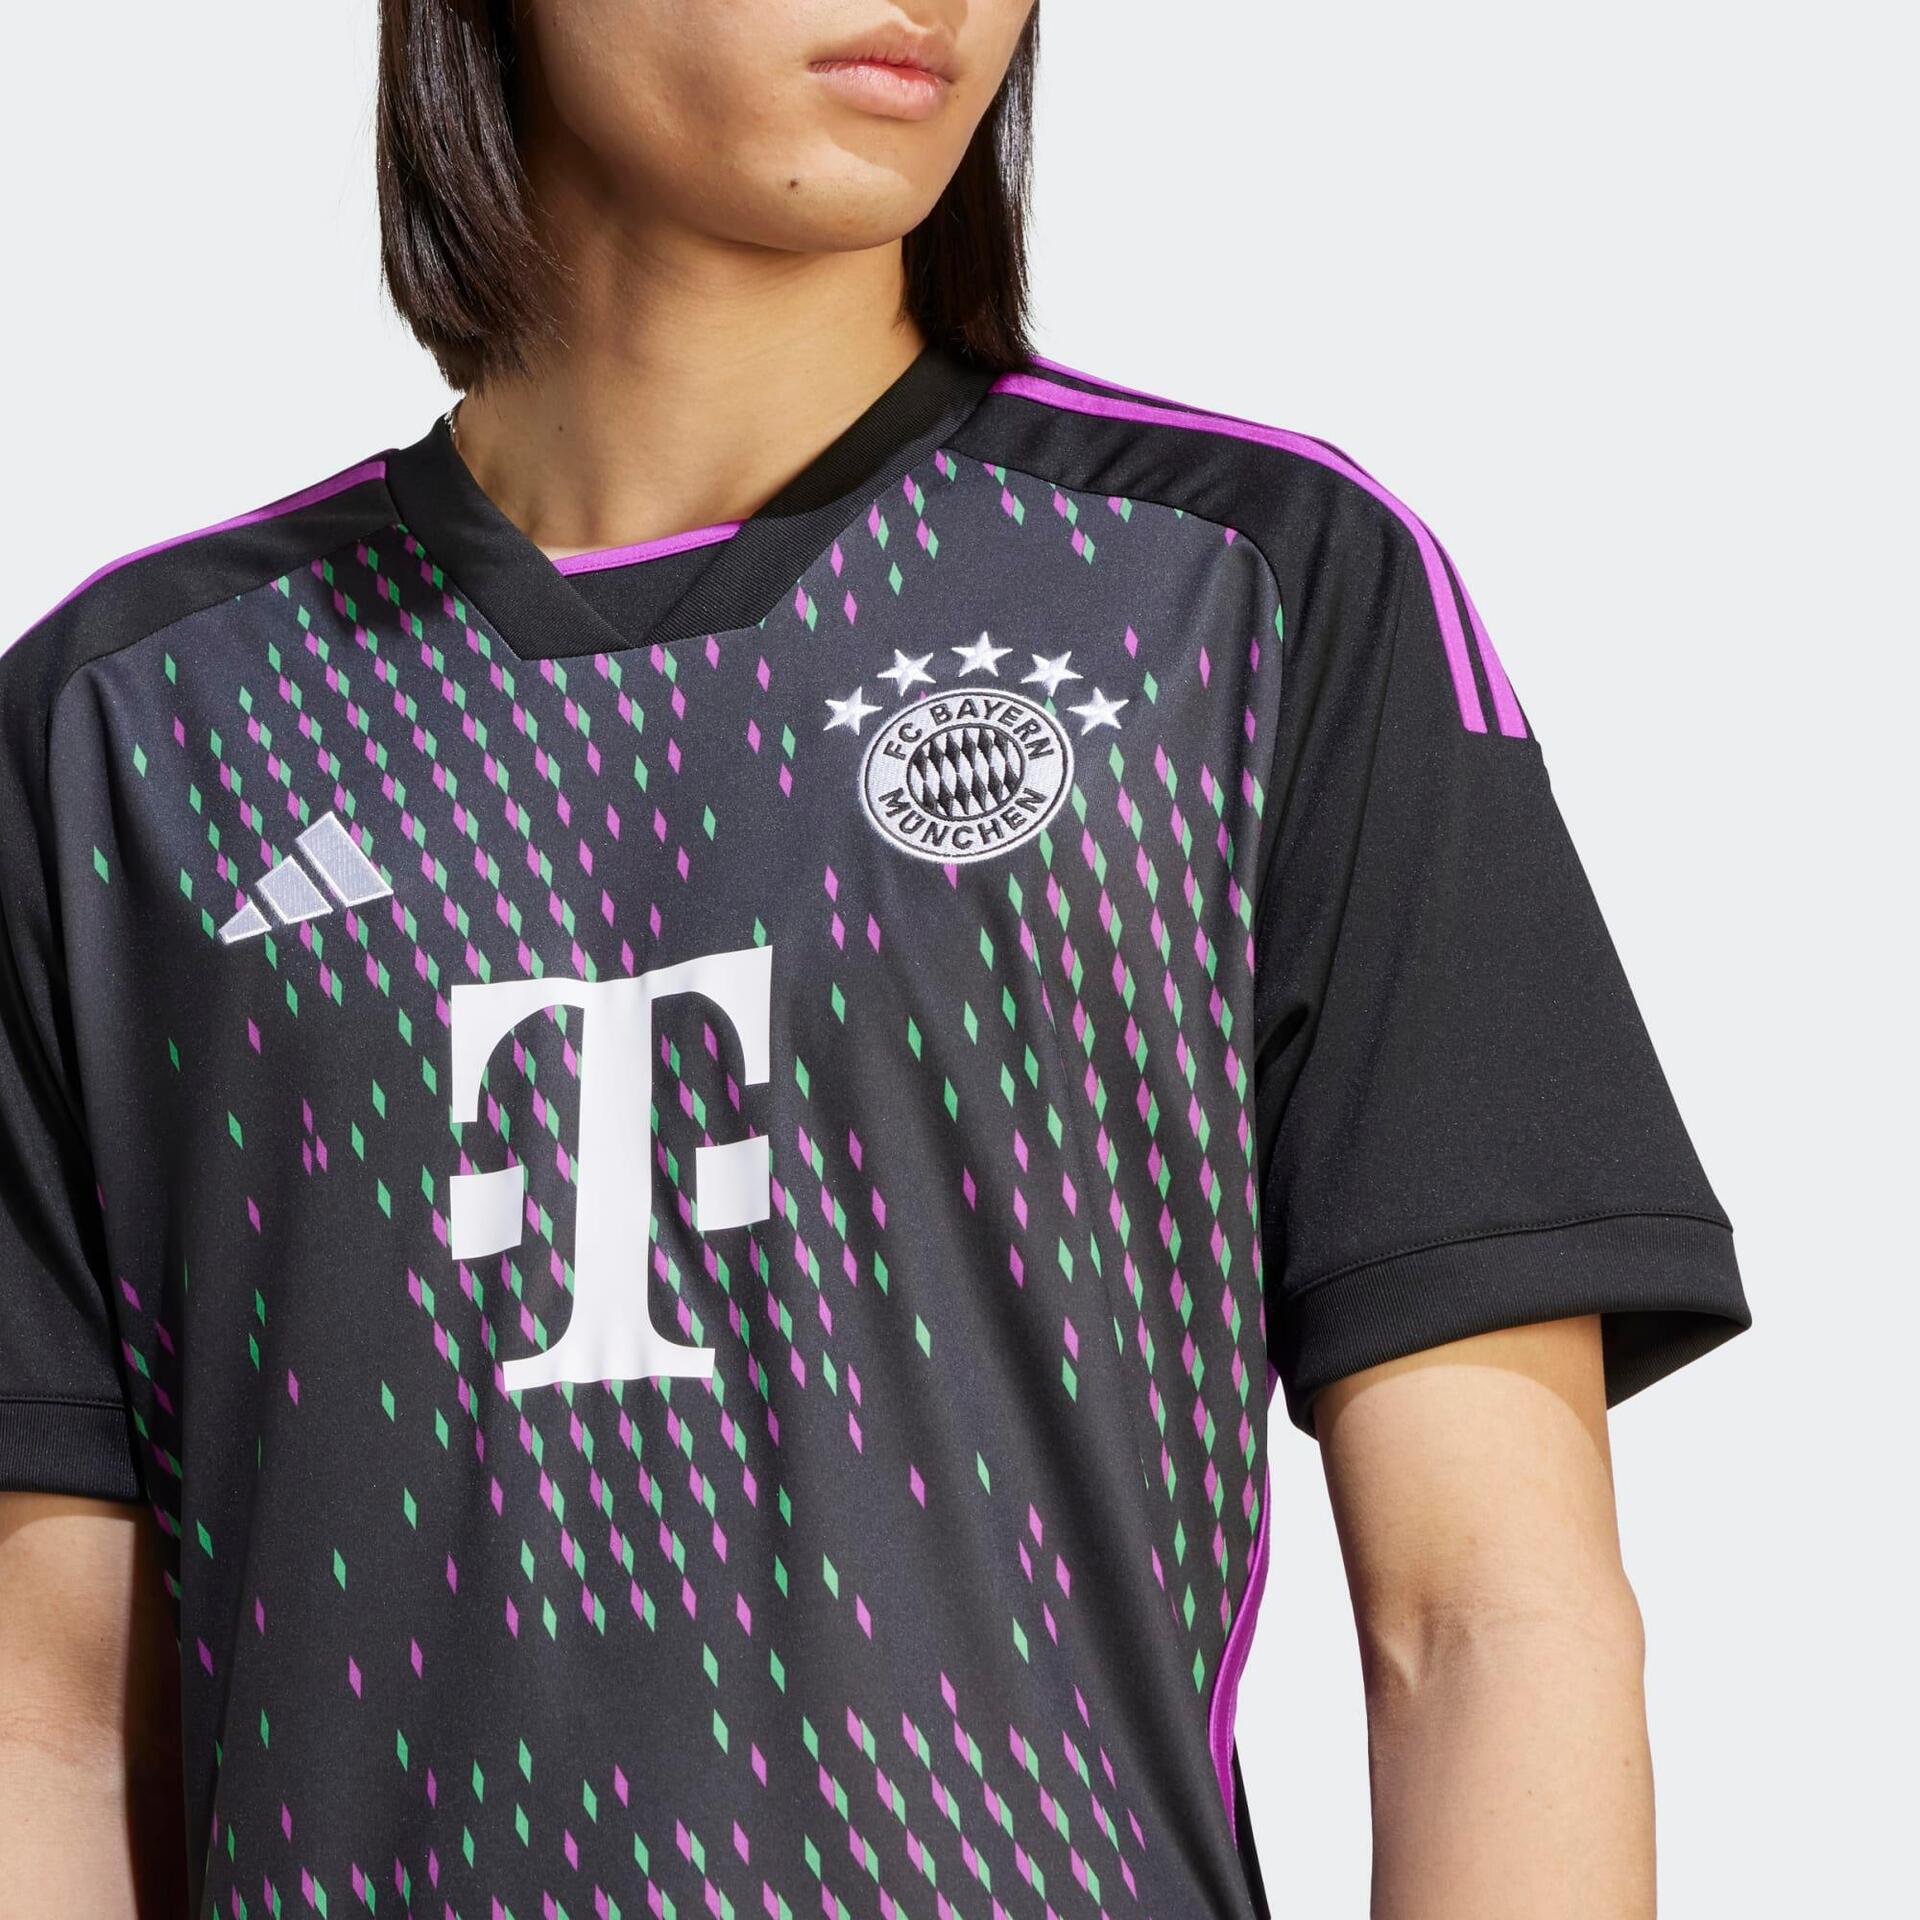 Adidas Bayern München voetbalshirts voor spelers en fans